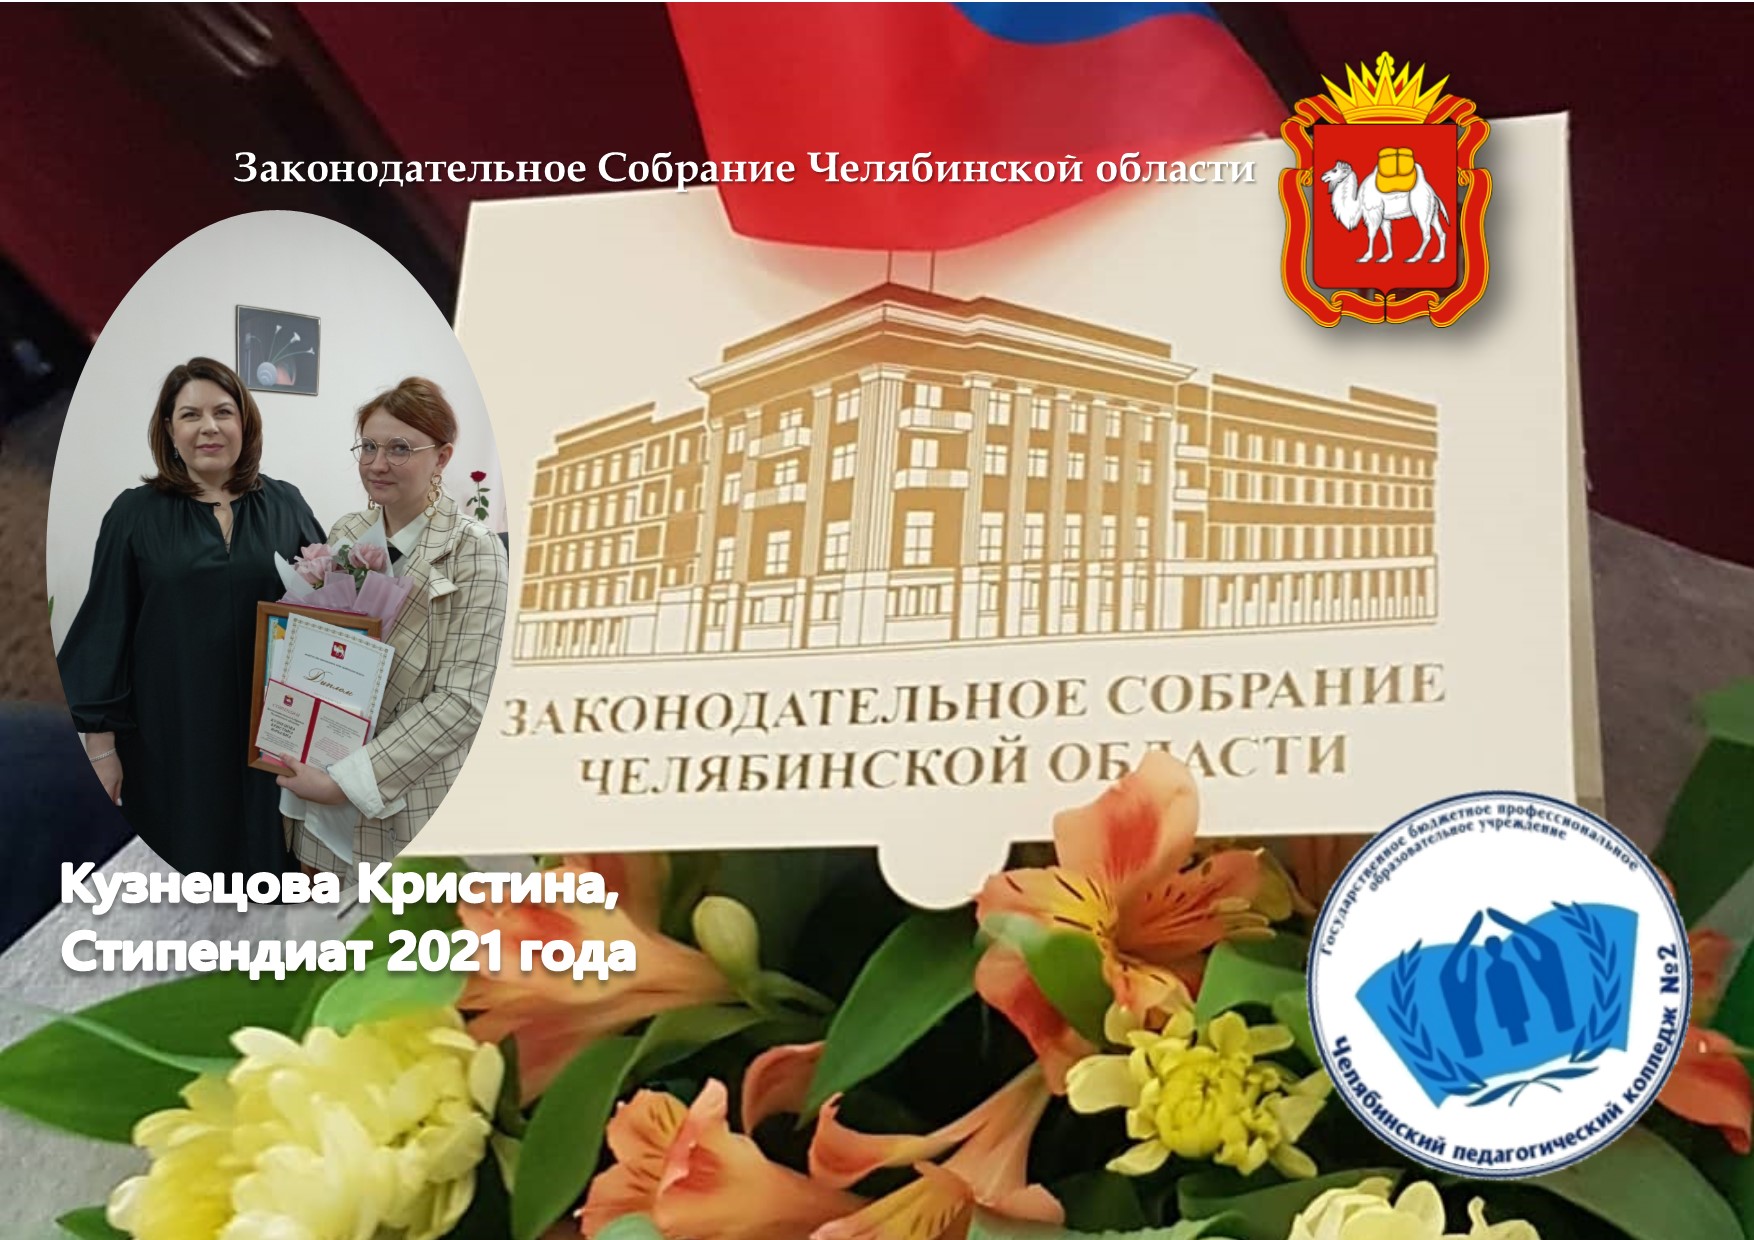 Стипендиат Законодательного собрания Челябинской области - 2021